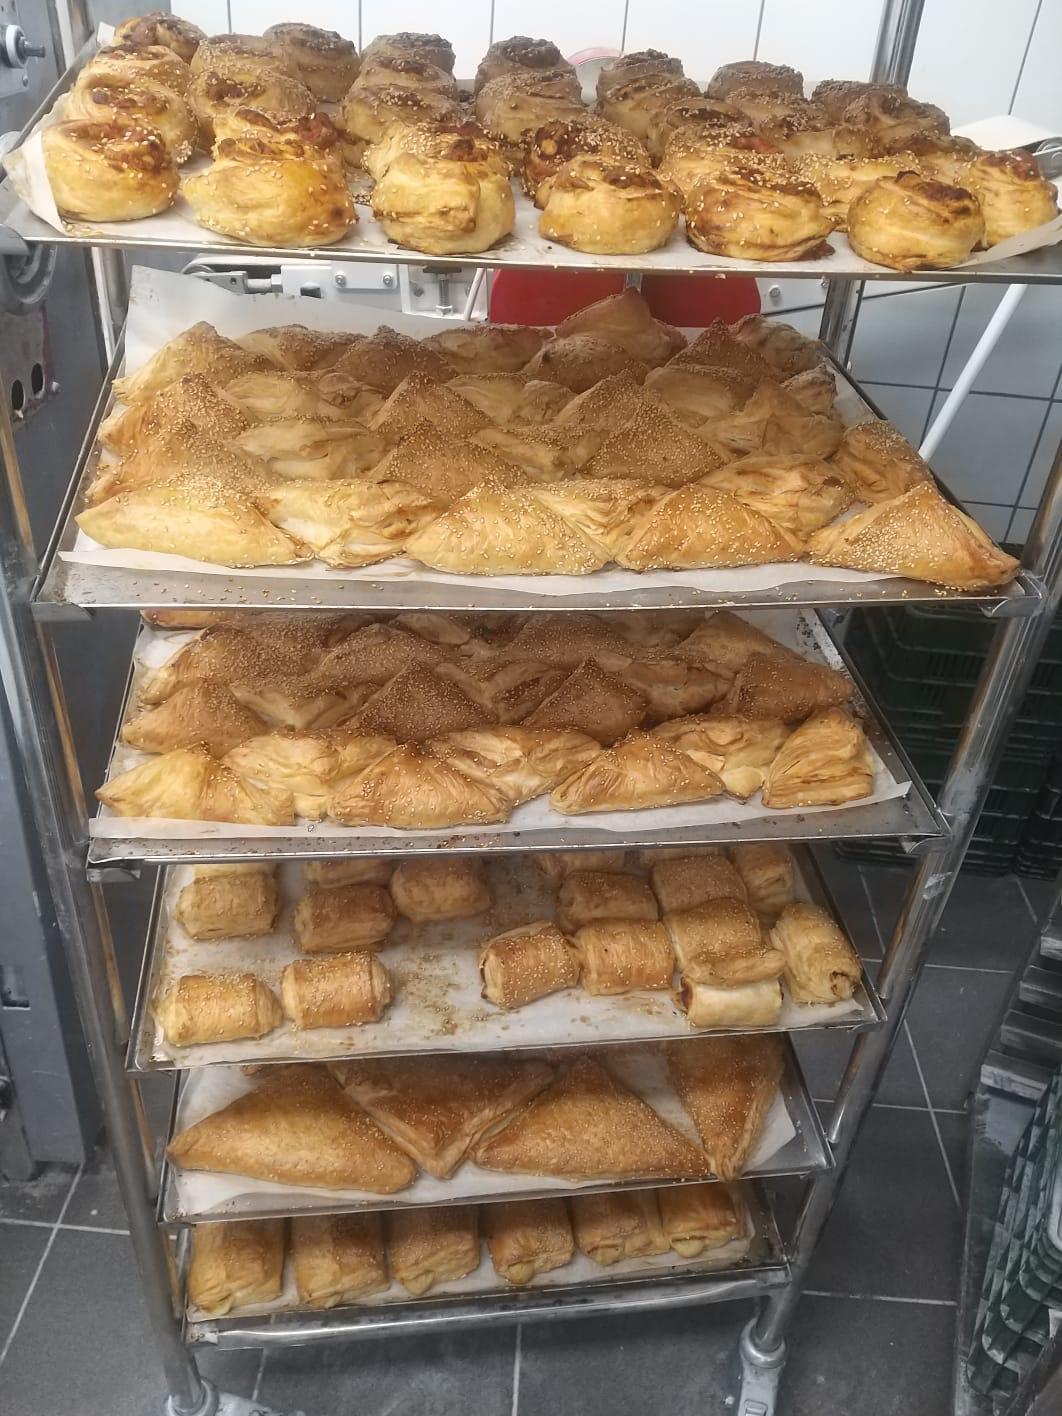  يافا: أشهى المعجنات والخبز المحلى بانتظاركم لدى مخبز أبو العافية 